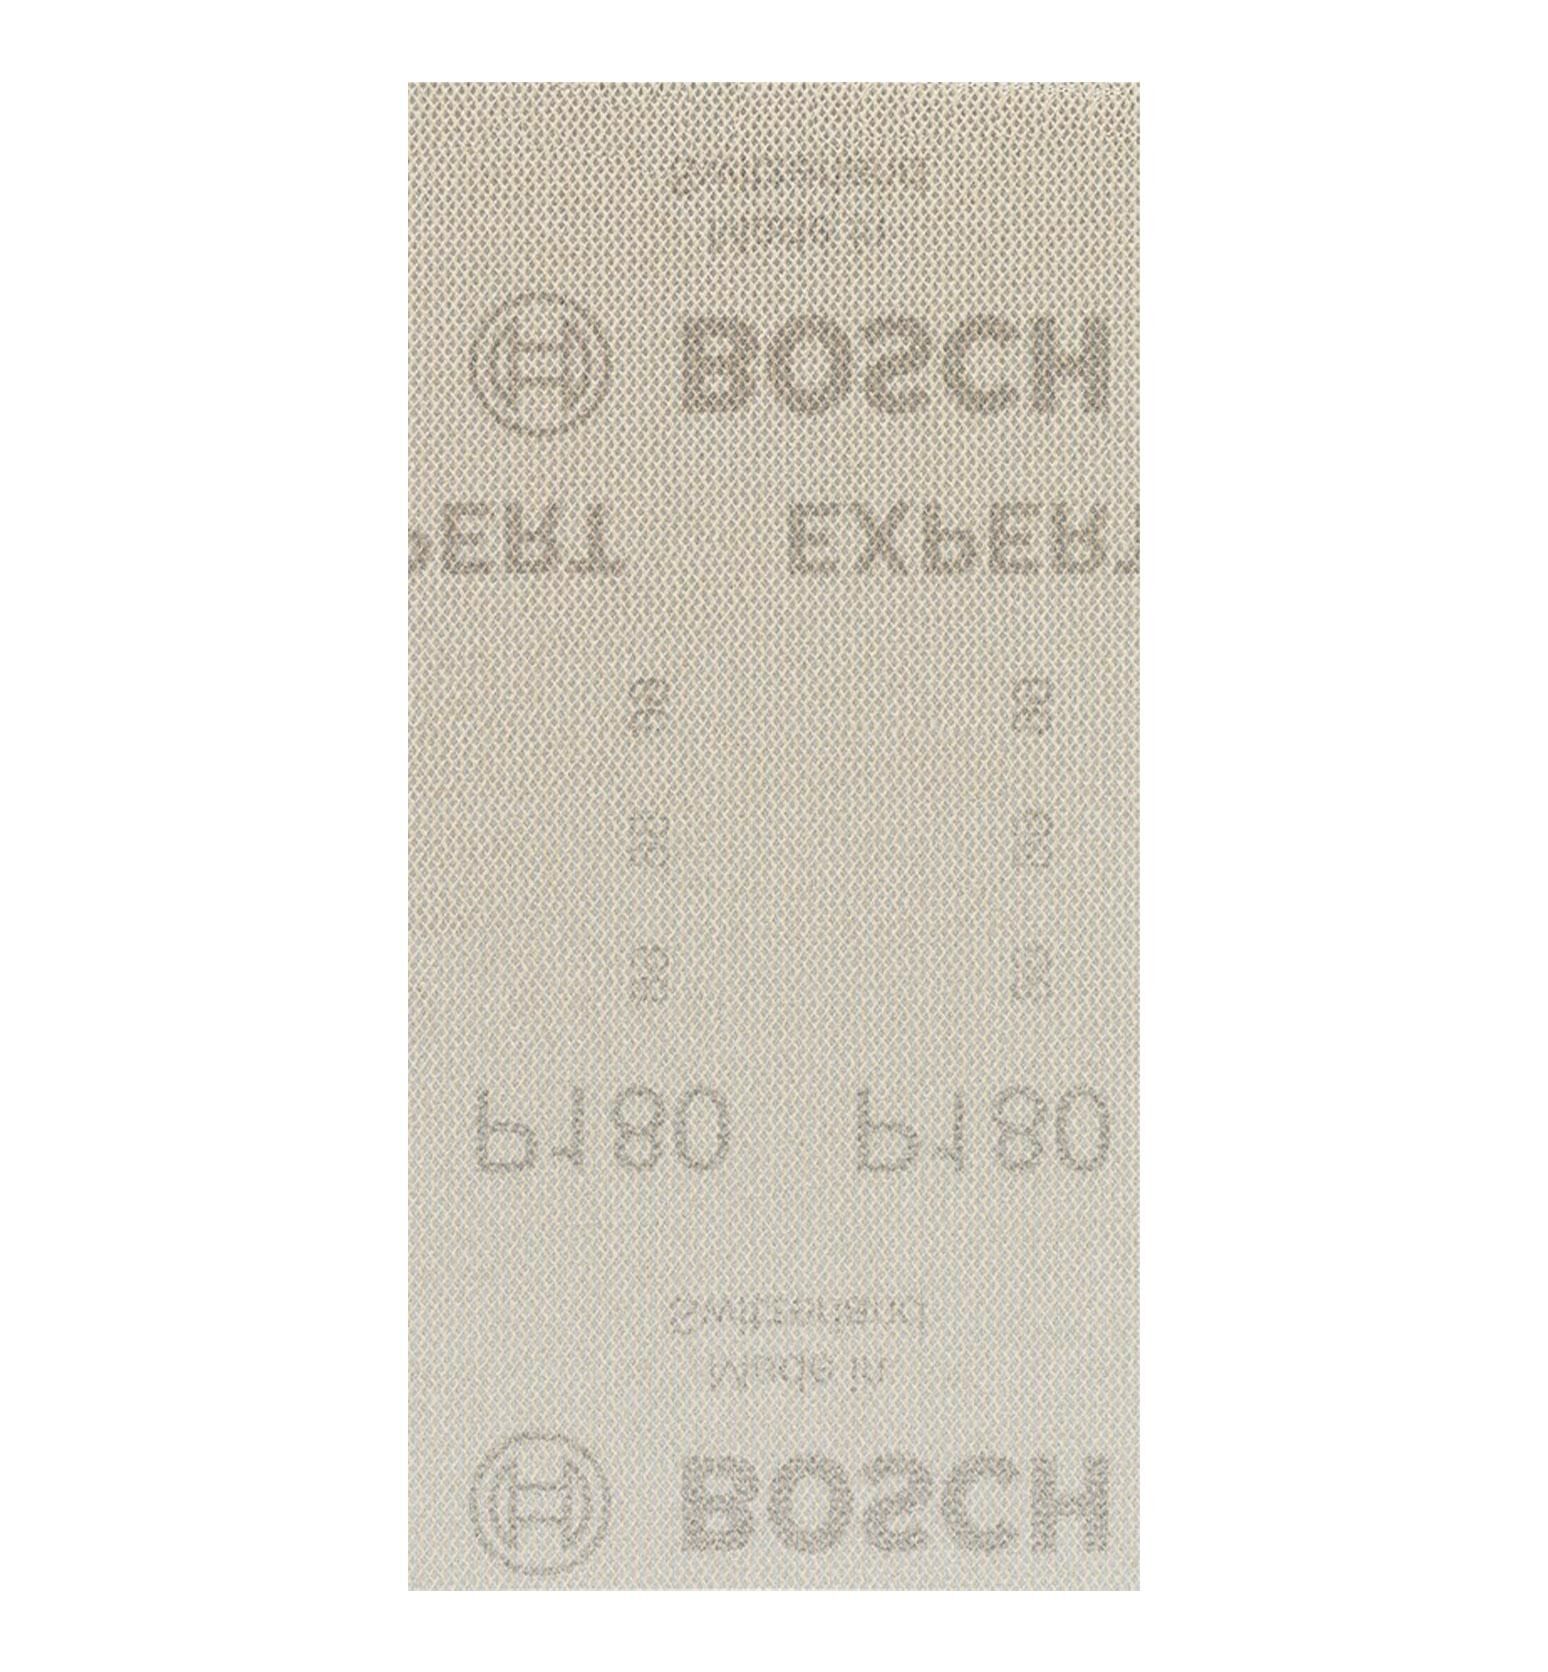 Bosch M480 93x186 mm 180 kum Elek Telli Ağ Zımpara 2608900747